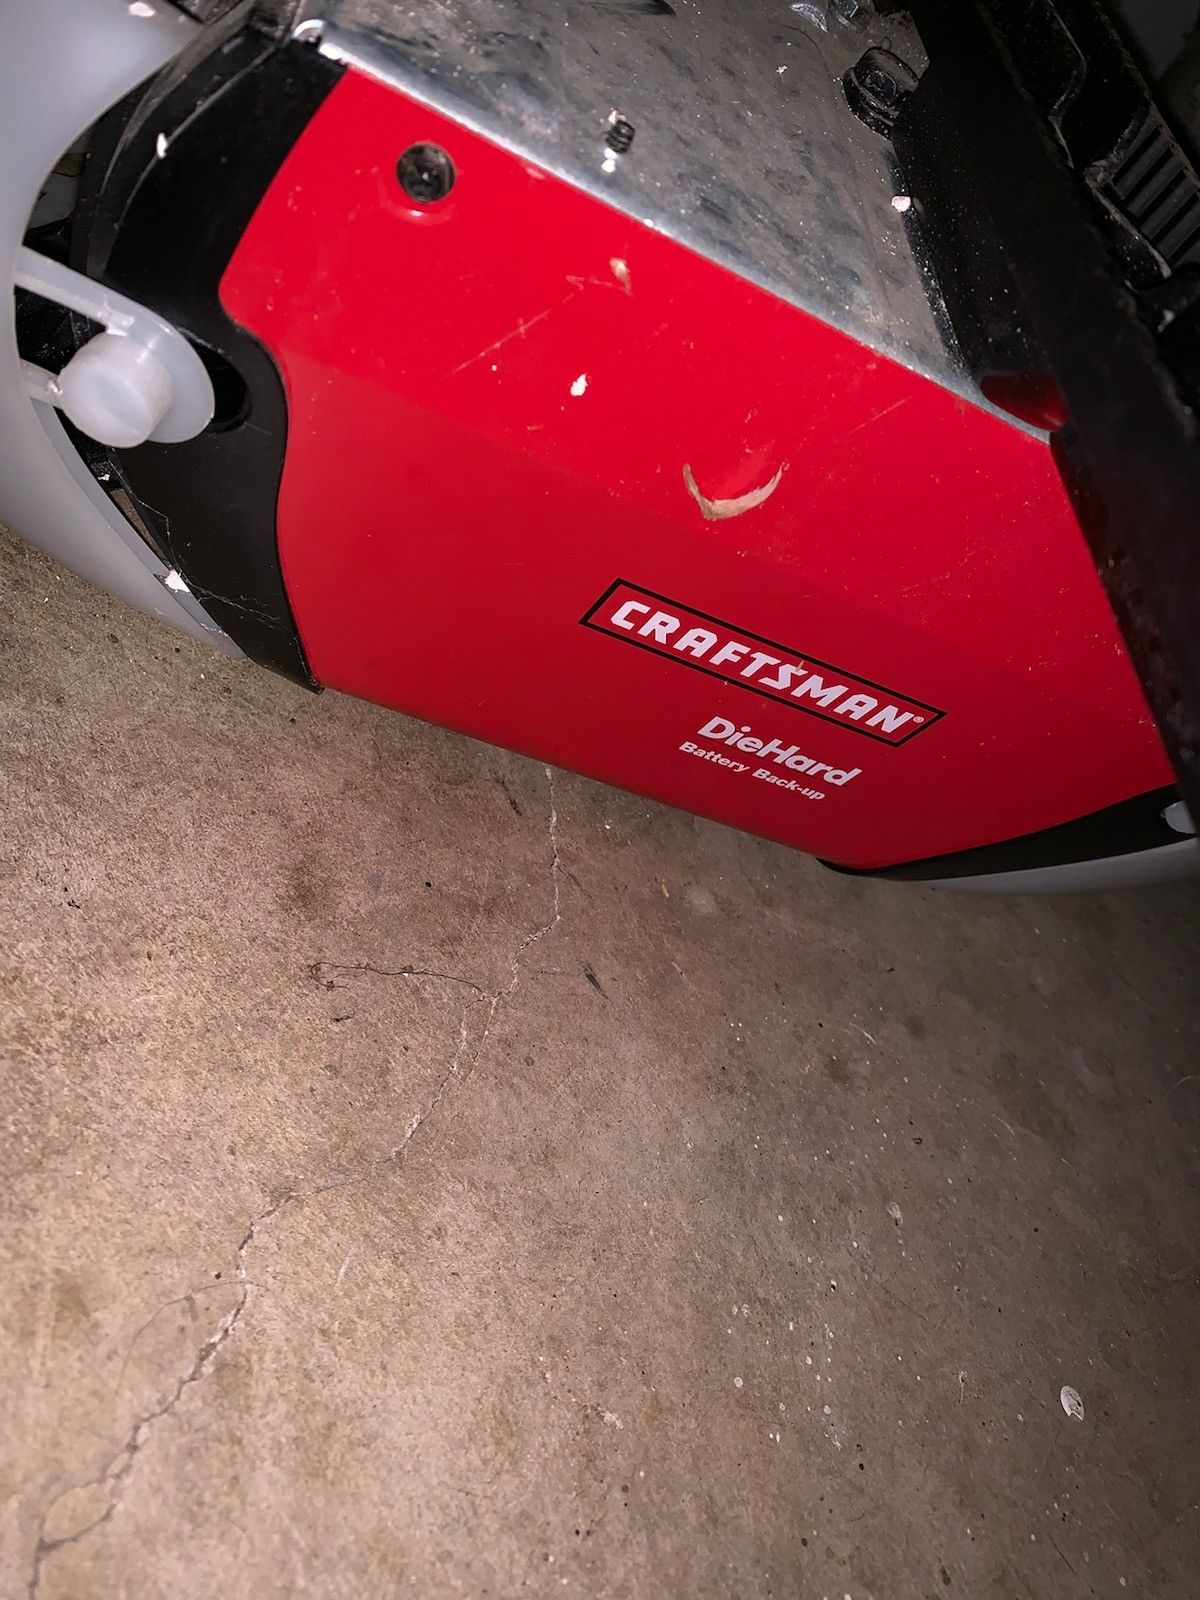 Craftsman garage motor opener